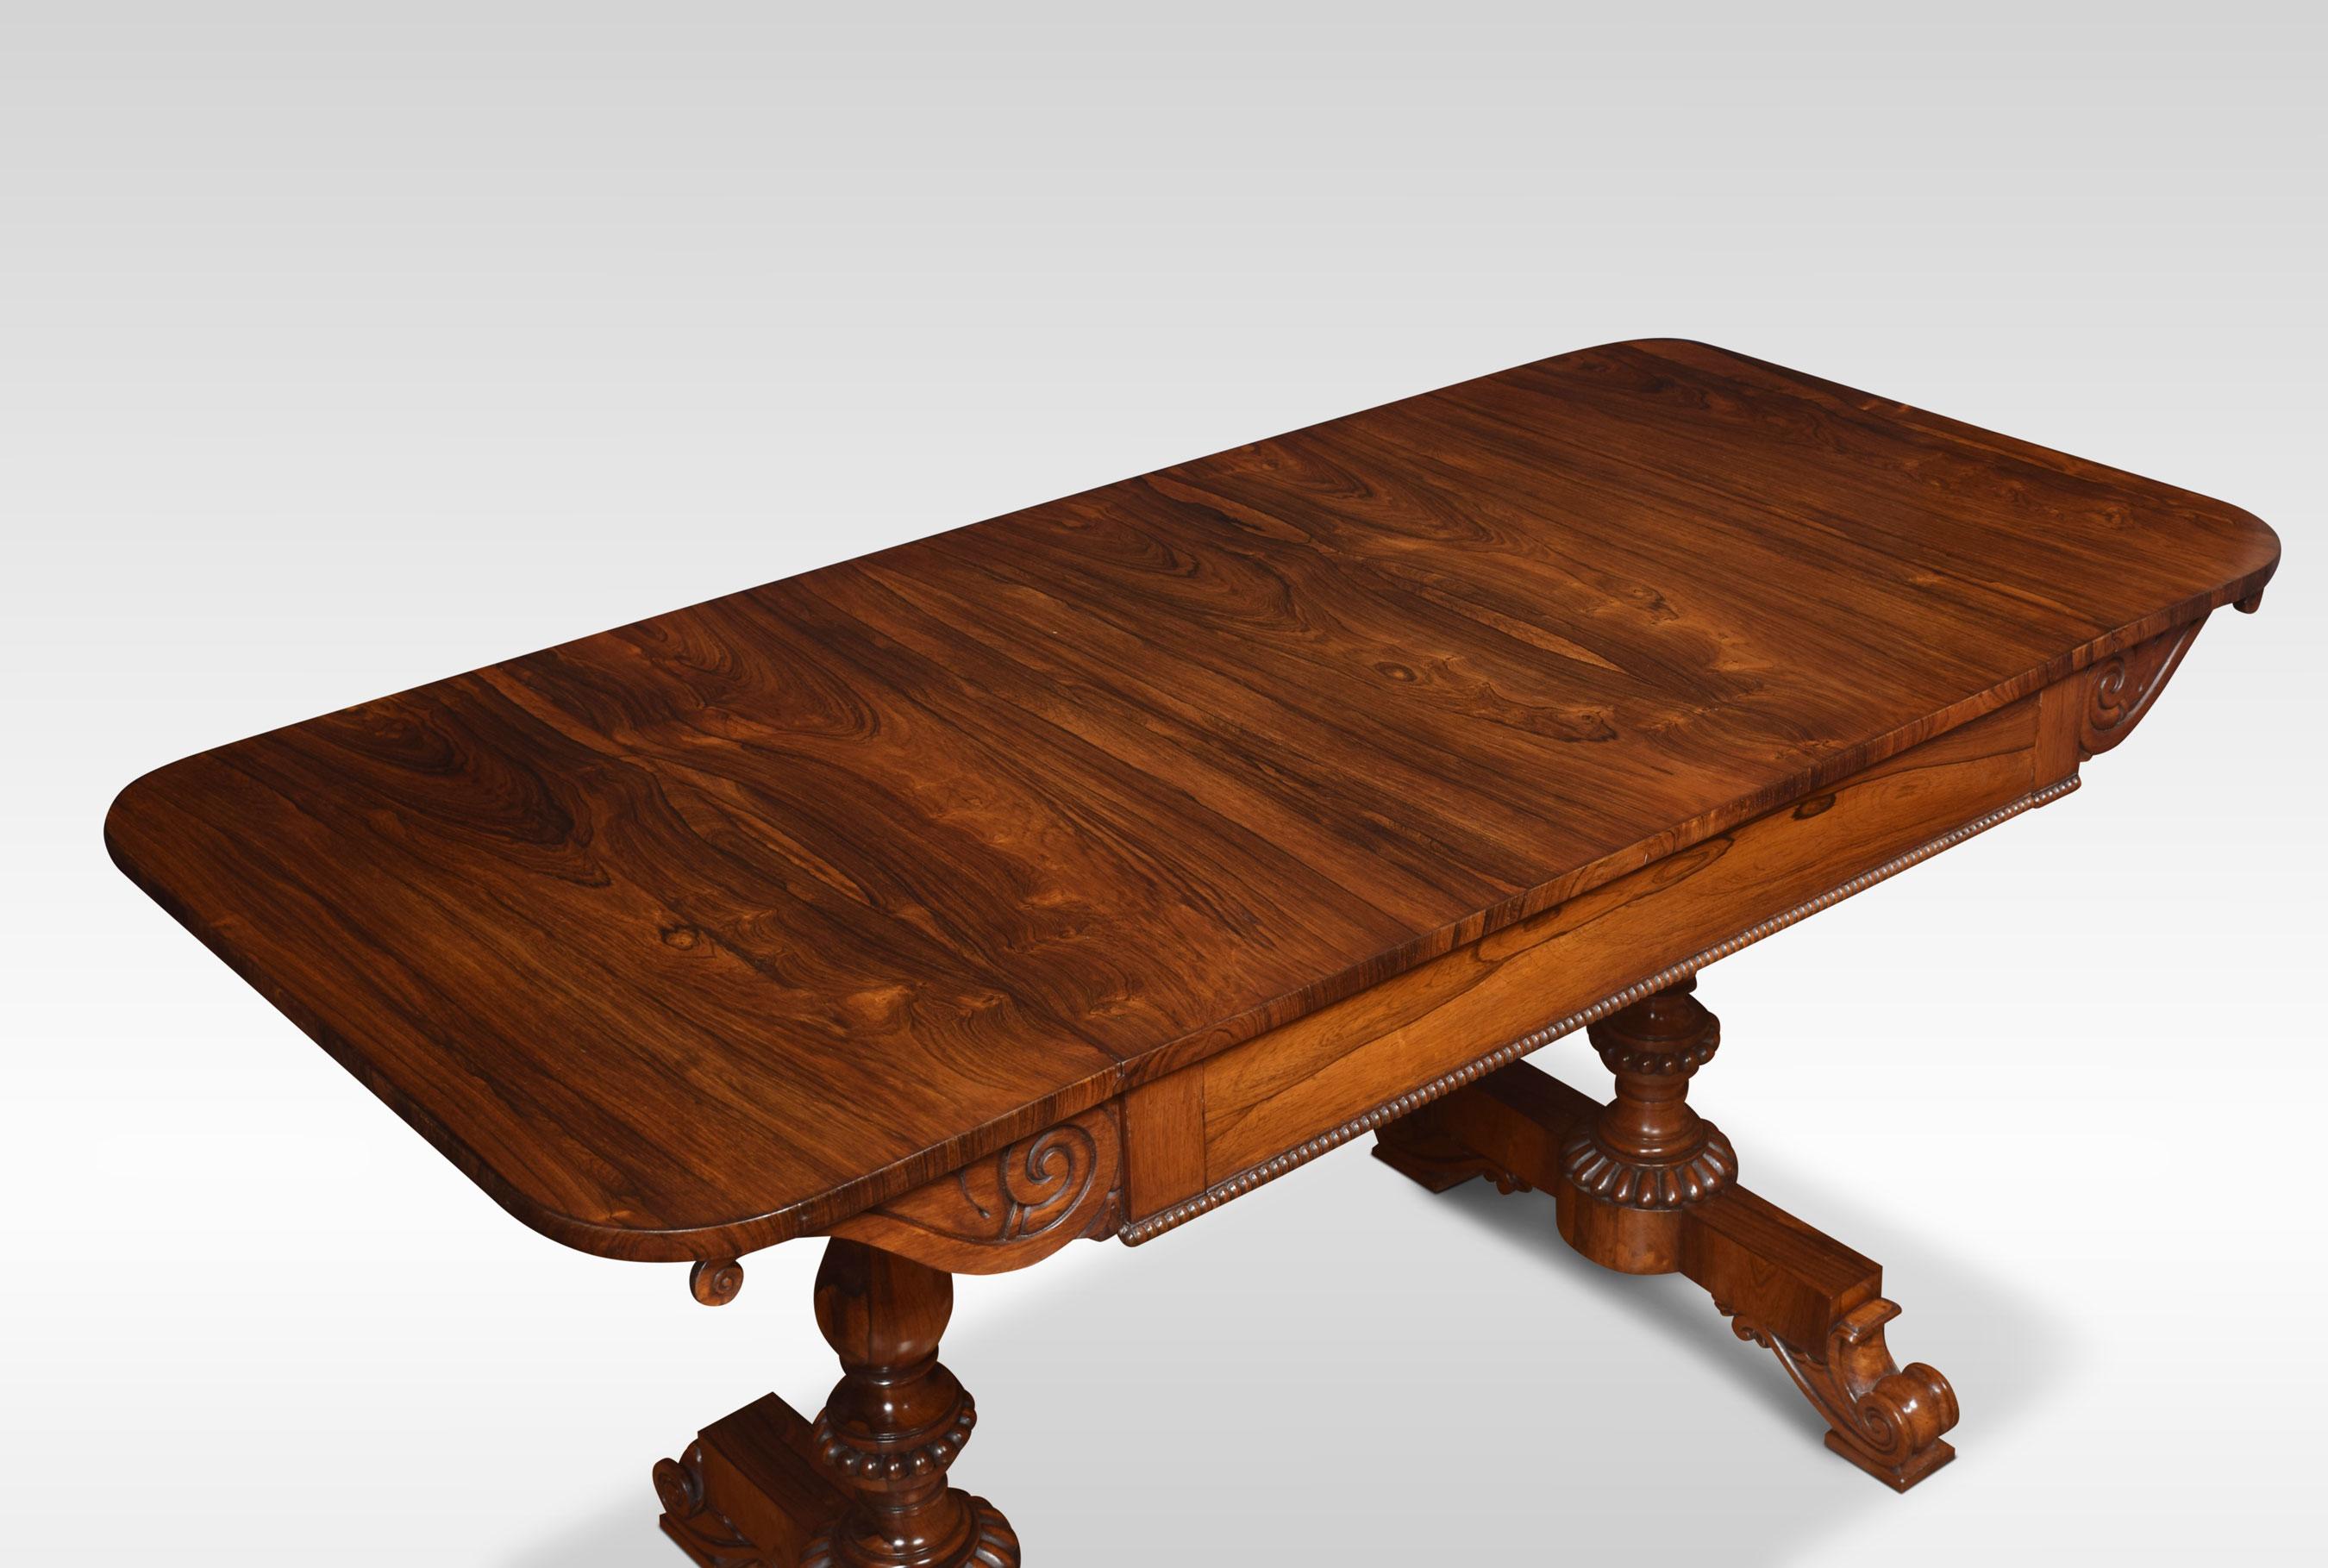 Paire de tables de canapé en bois de rose William IV. Le grand plateau rectangulaire bien dessiné avec des coins arrondis et des extrémités relevables. La frise est surmontée d'un grand tiroir central et d'un bord perlé. Relevée sur des supports